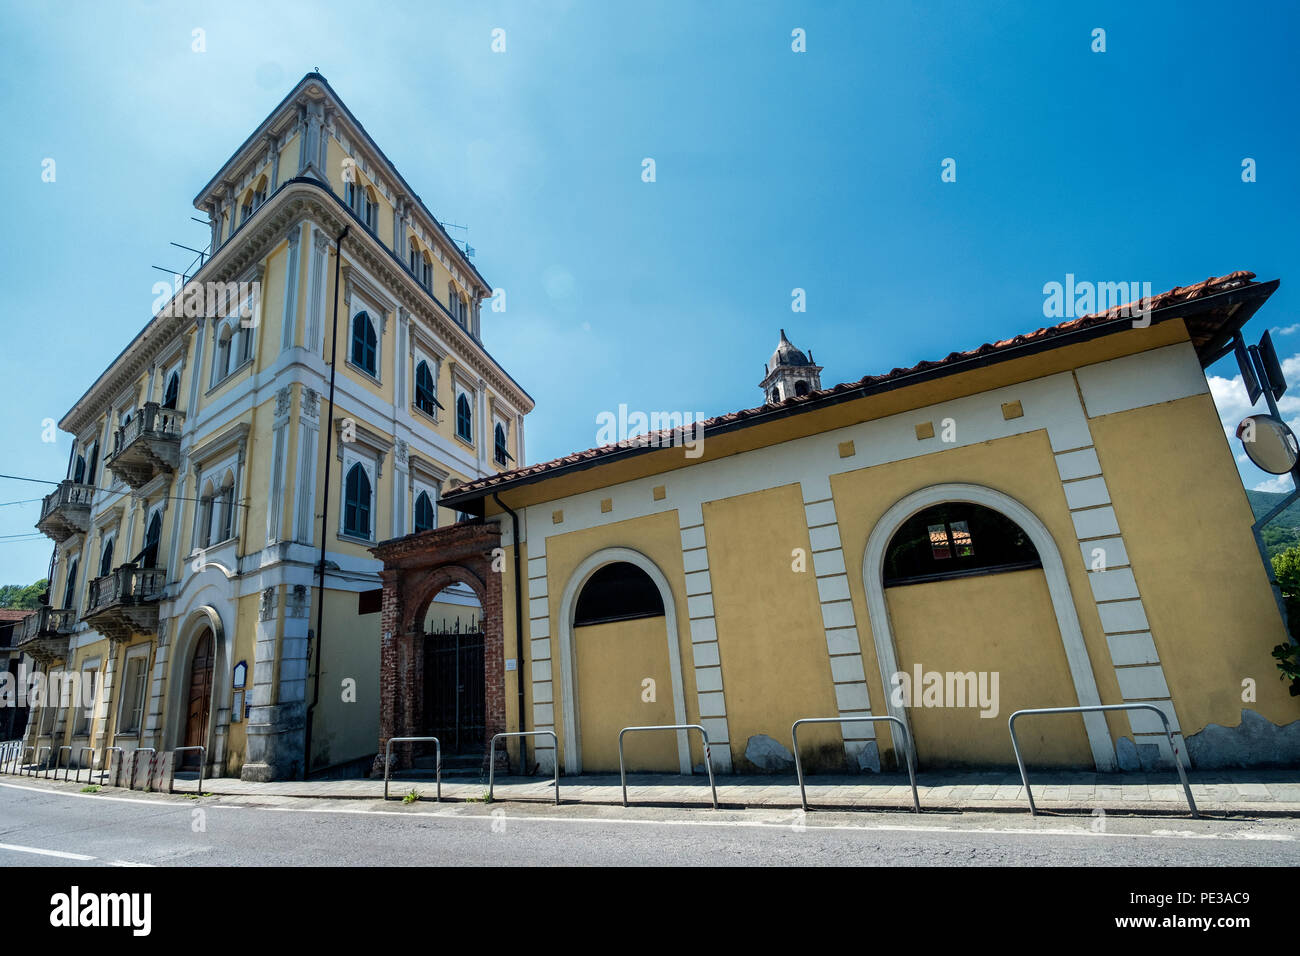 Villafranca in Lunigiana, Massa Carrara, Tuscany, Italy, historic building Stock Photo